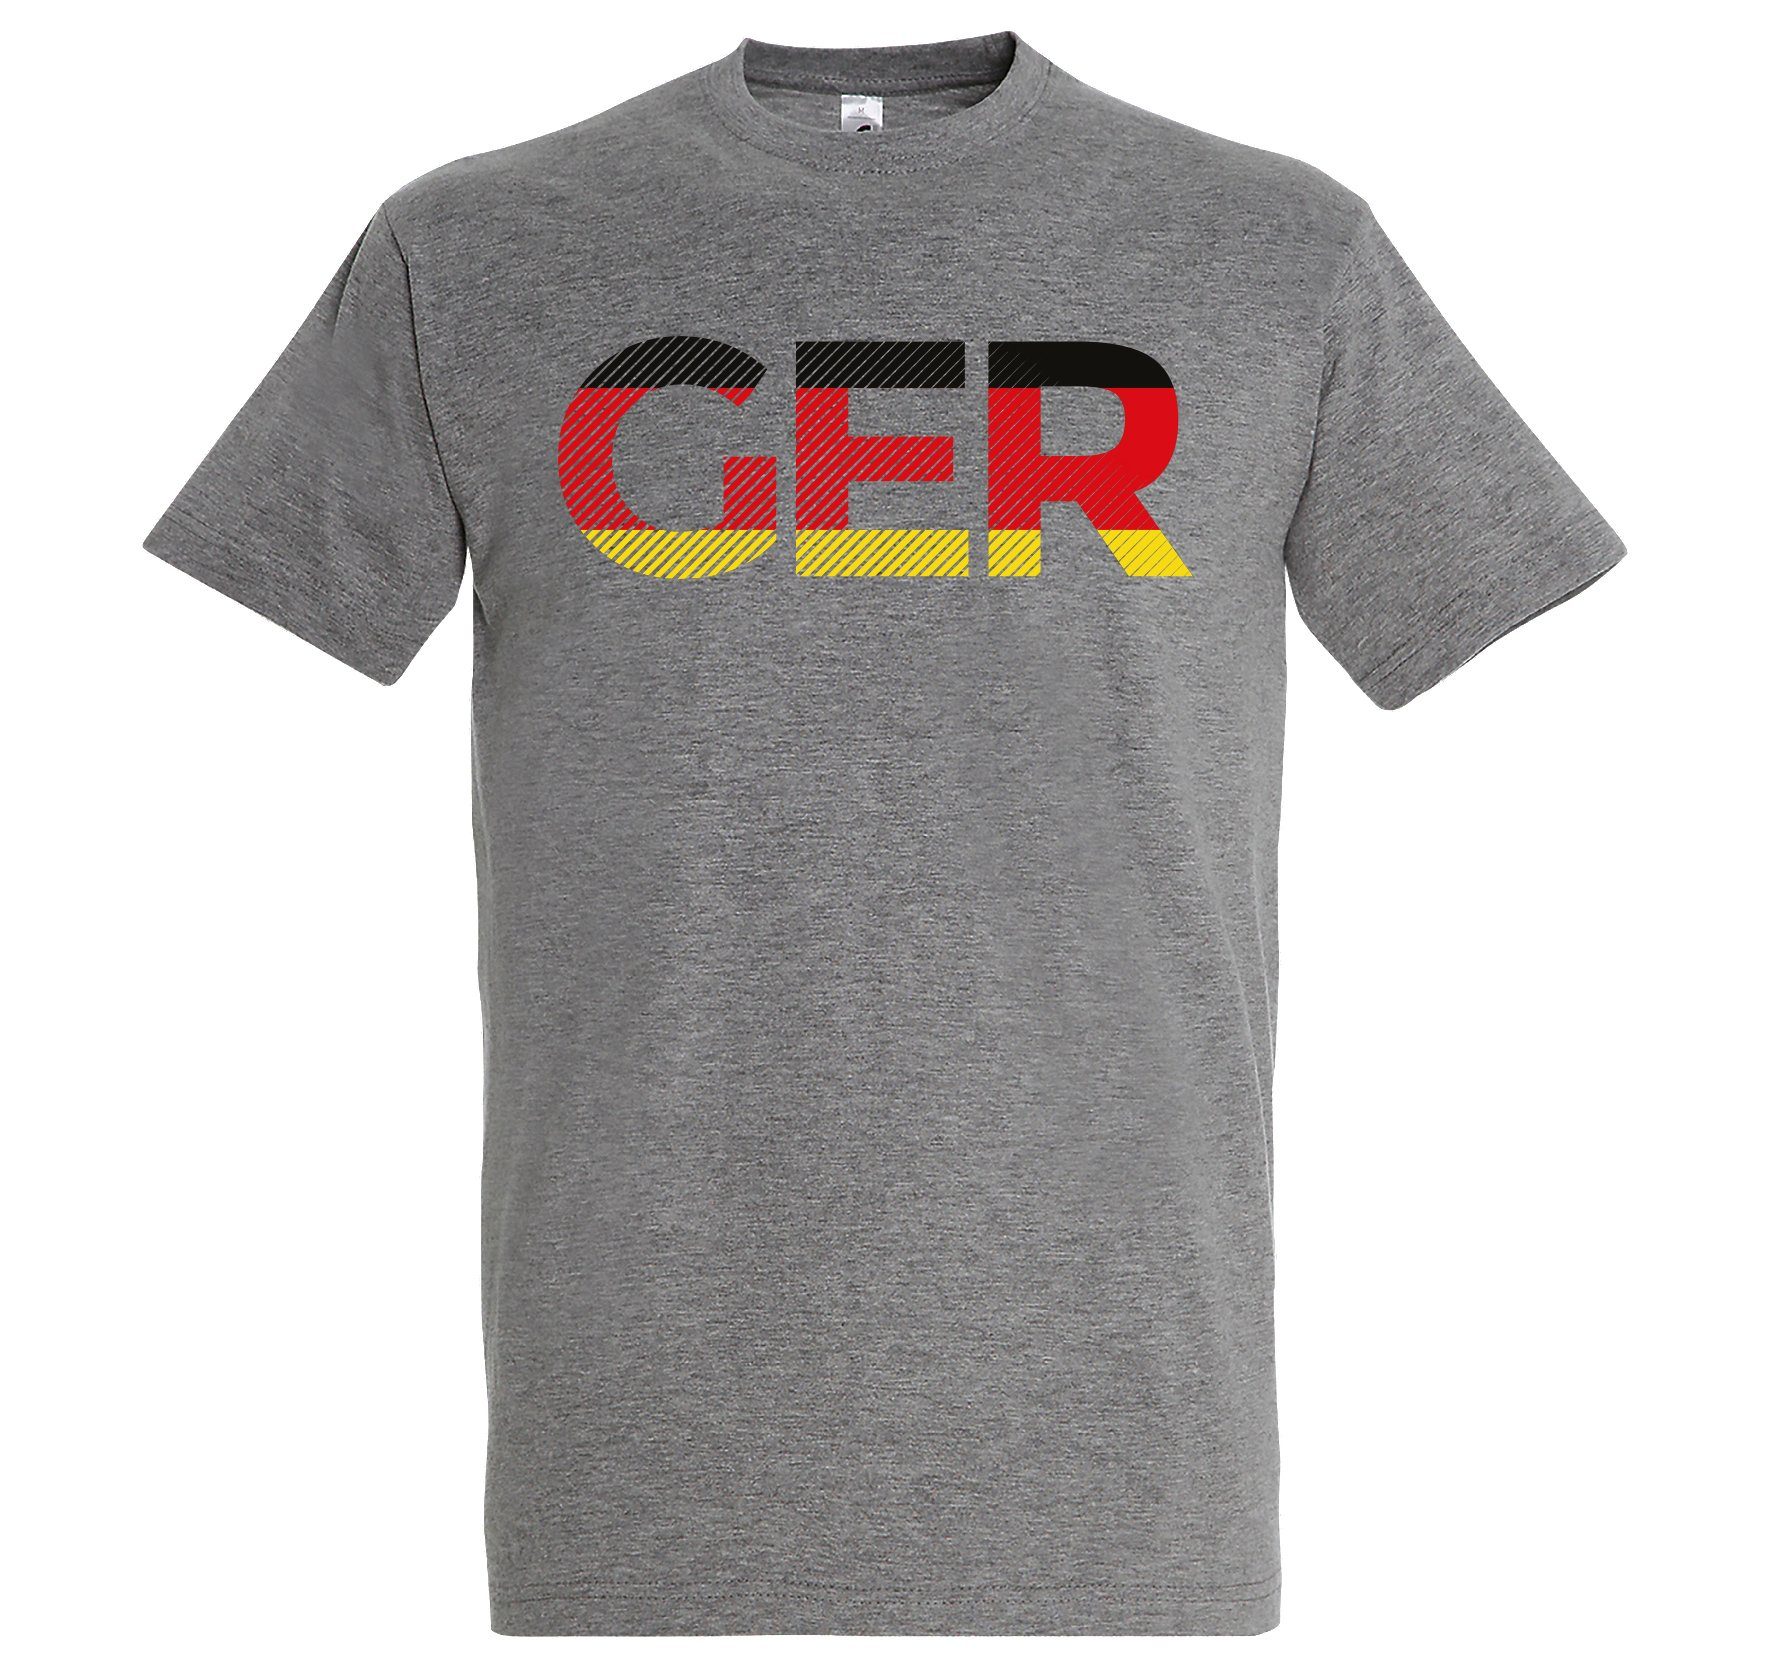 Youth Grau im Herren Look GER Germany mit Frontprint Fußball T-Shirt Designz T-Shirt